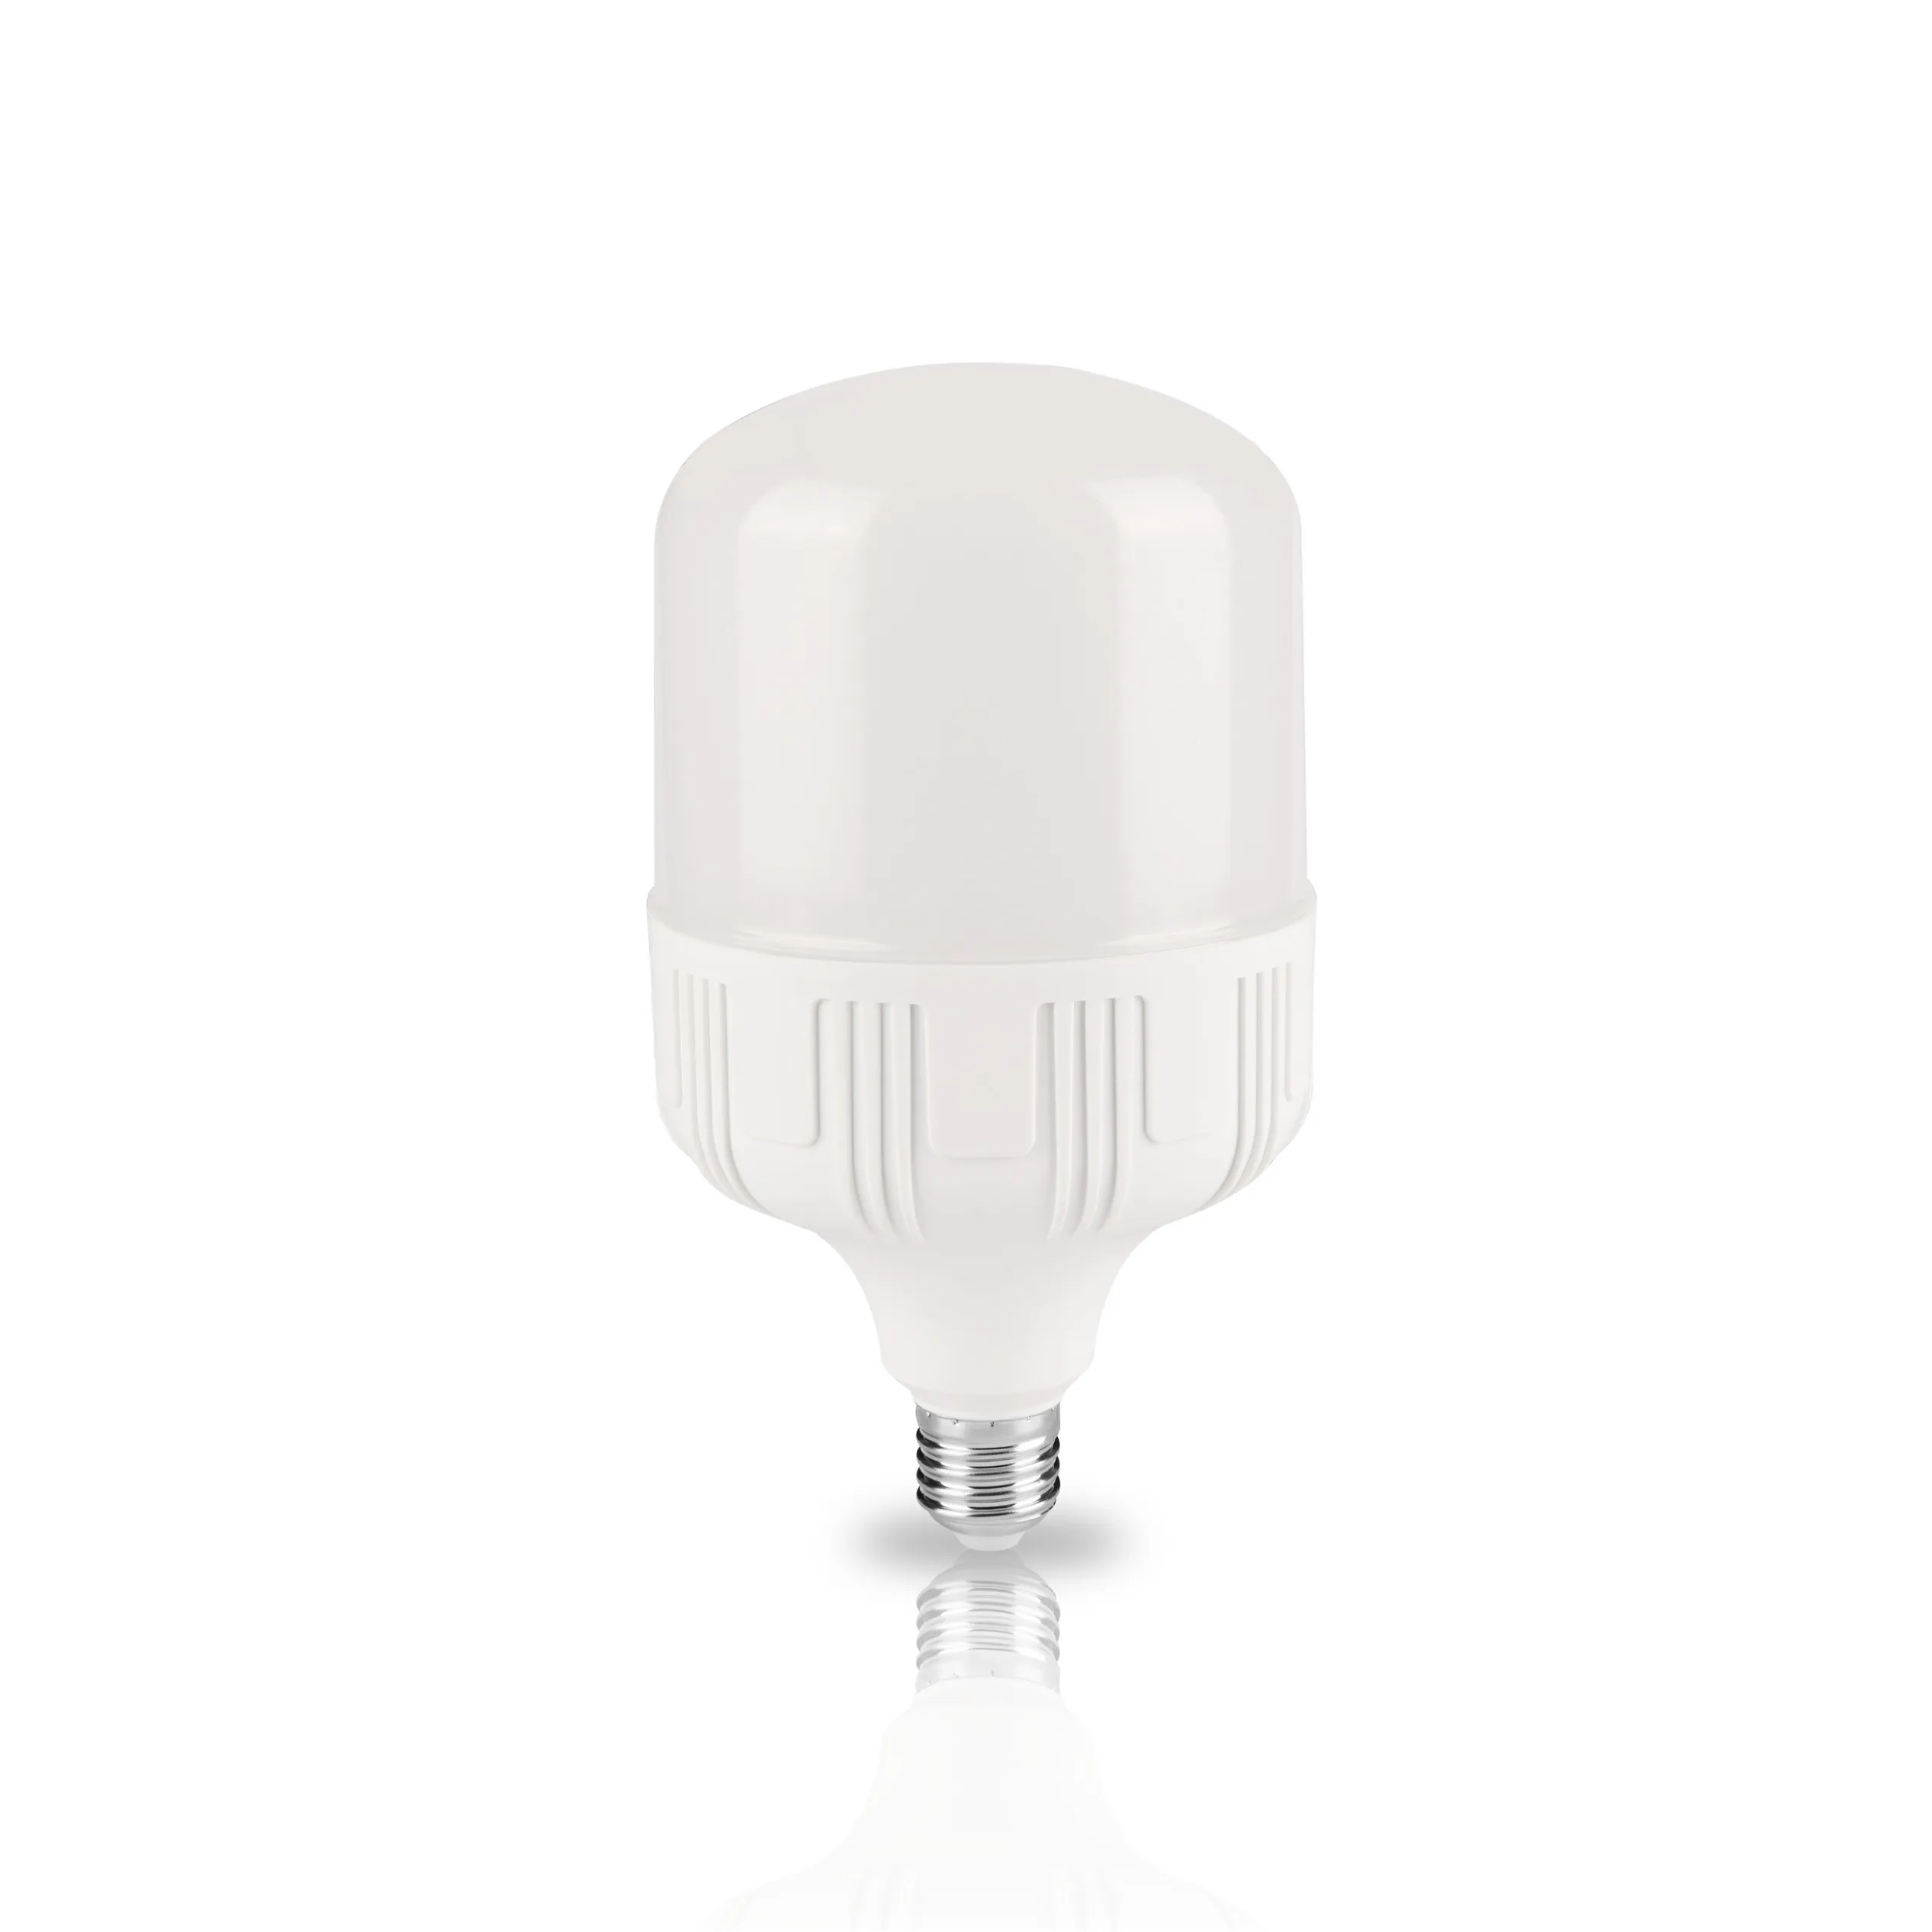 Prezzo a buon mercato OEM risparmio energetico LED T lampadina 220V uso domestico illuminazione a LED 5W 10W 15W alta potenza Lumen Bul faretto